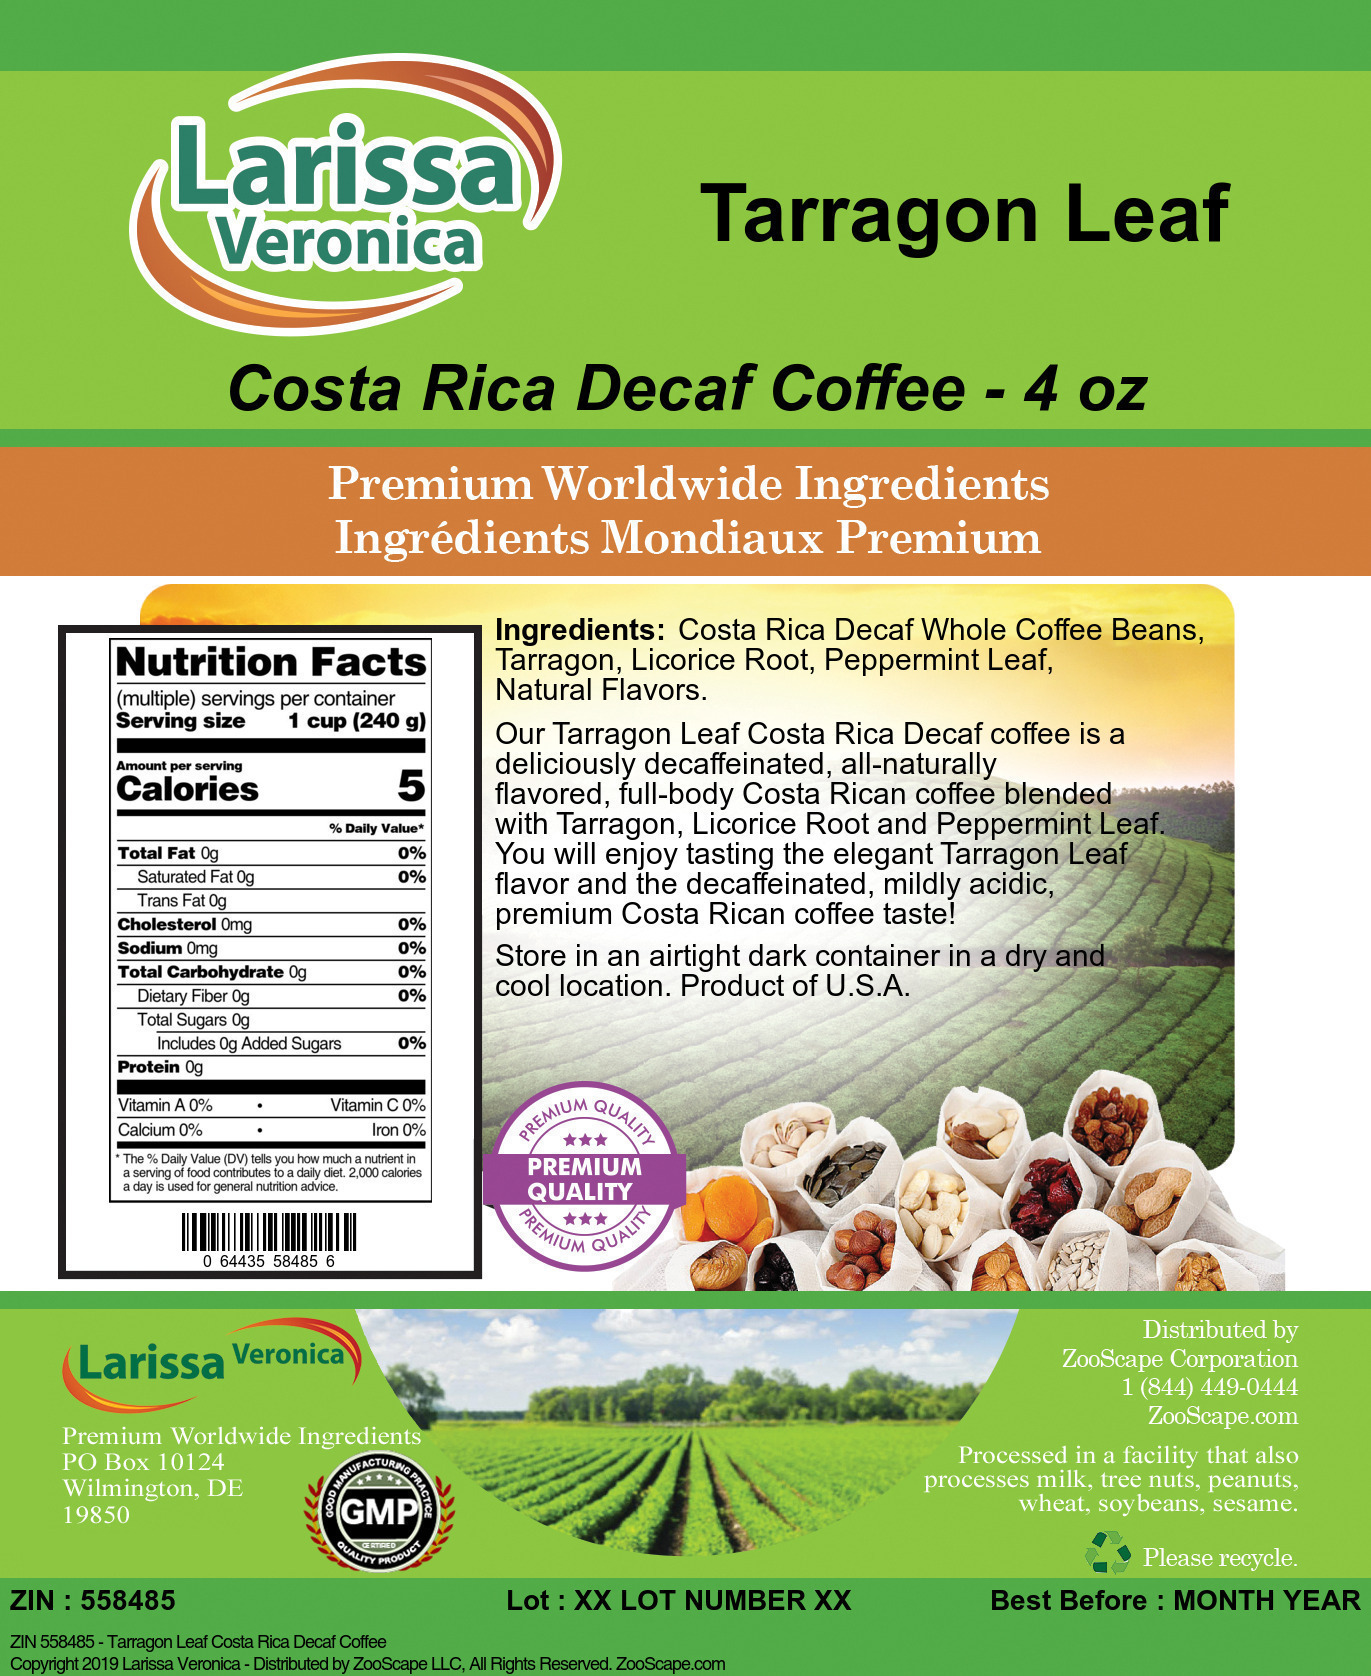 Tarragon Leaf Costa Rica Decaf Coffee - Label